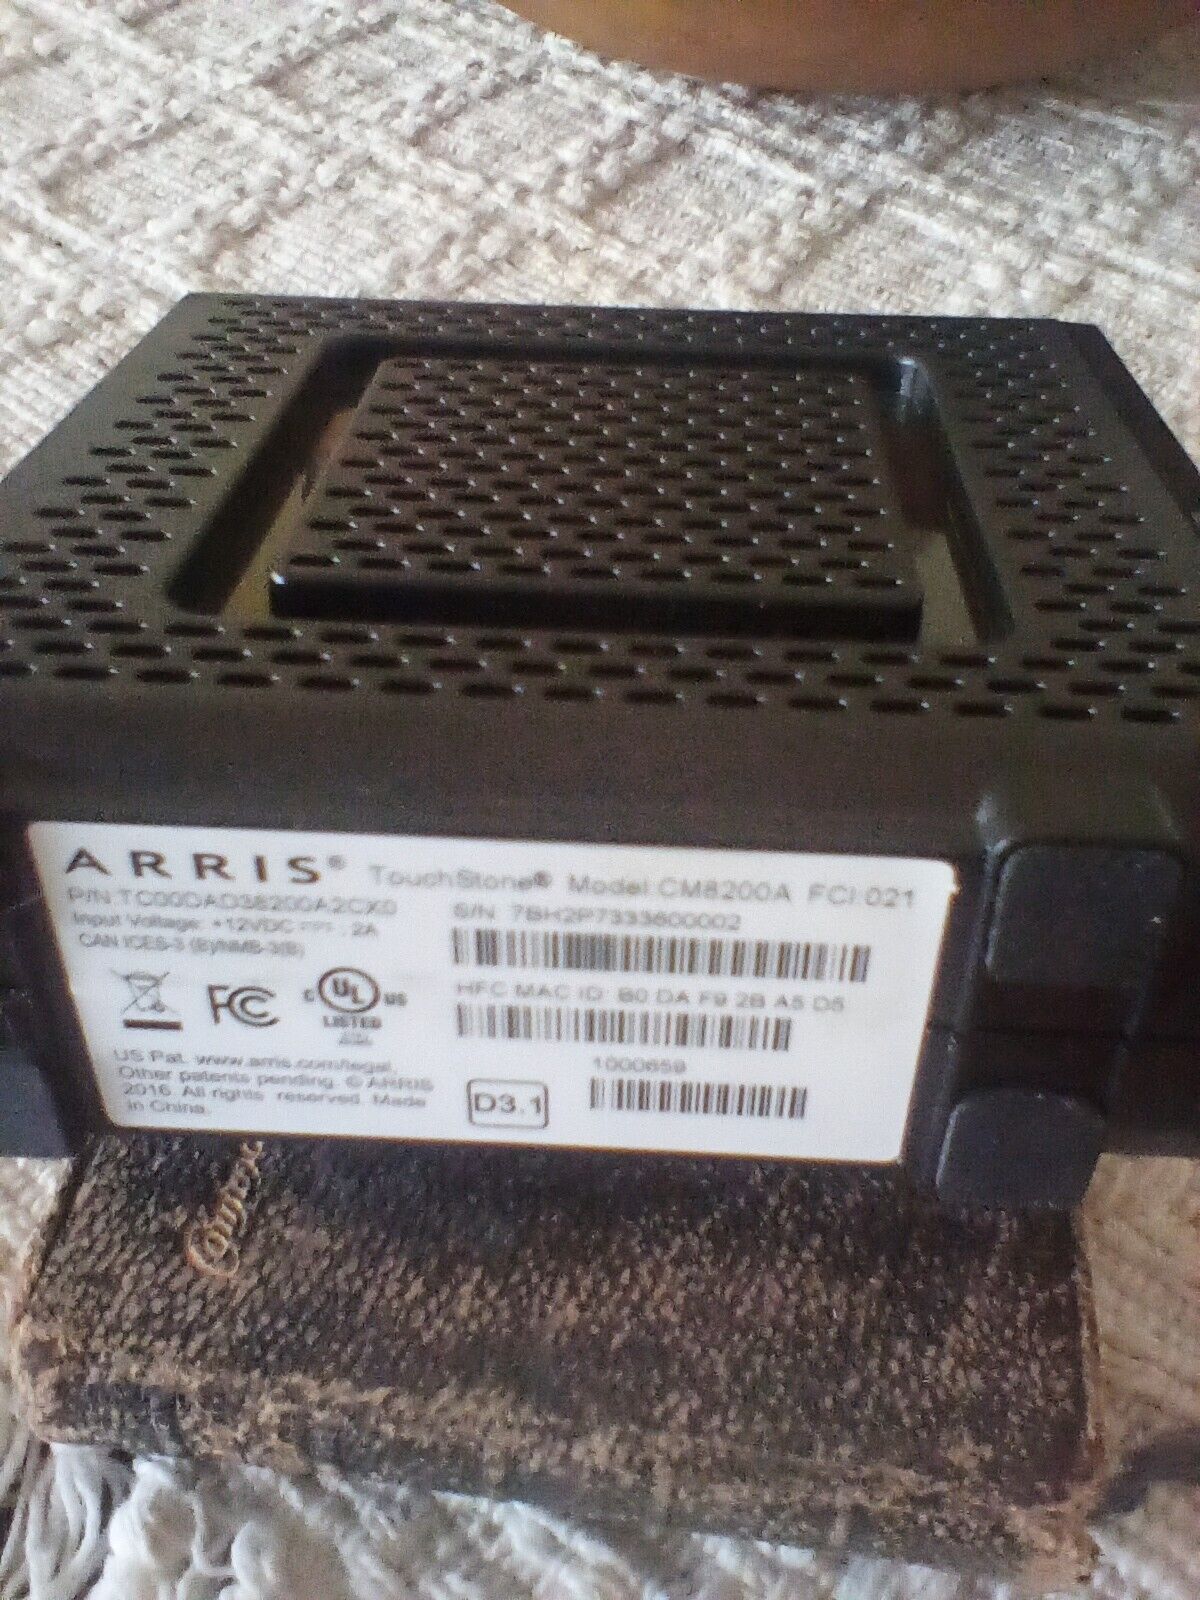 ARRIS Touchstone CM8200A DOCSIS 3.1 Ultra Fast Cable Modem - Black